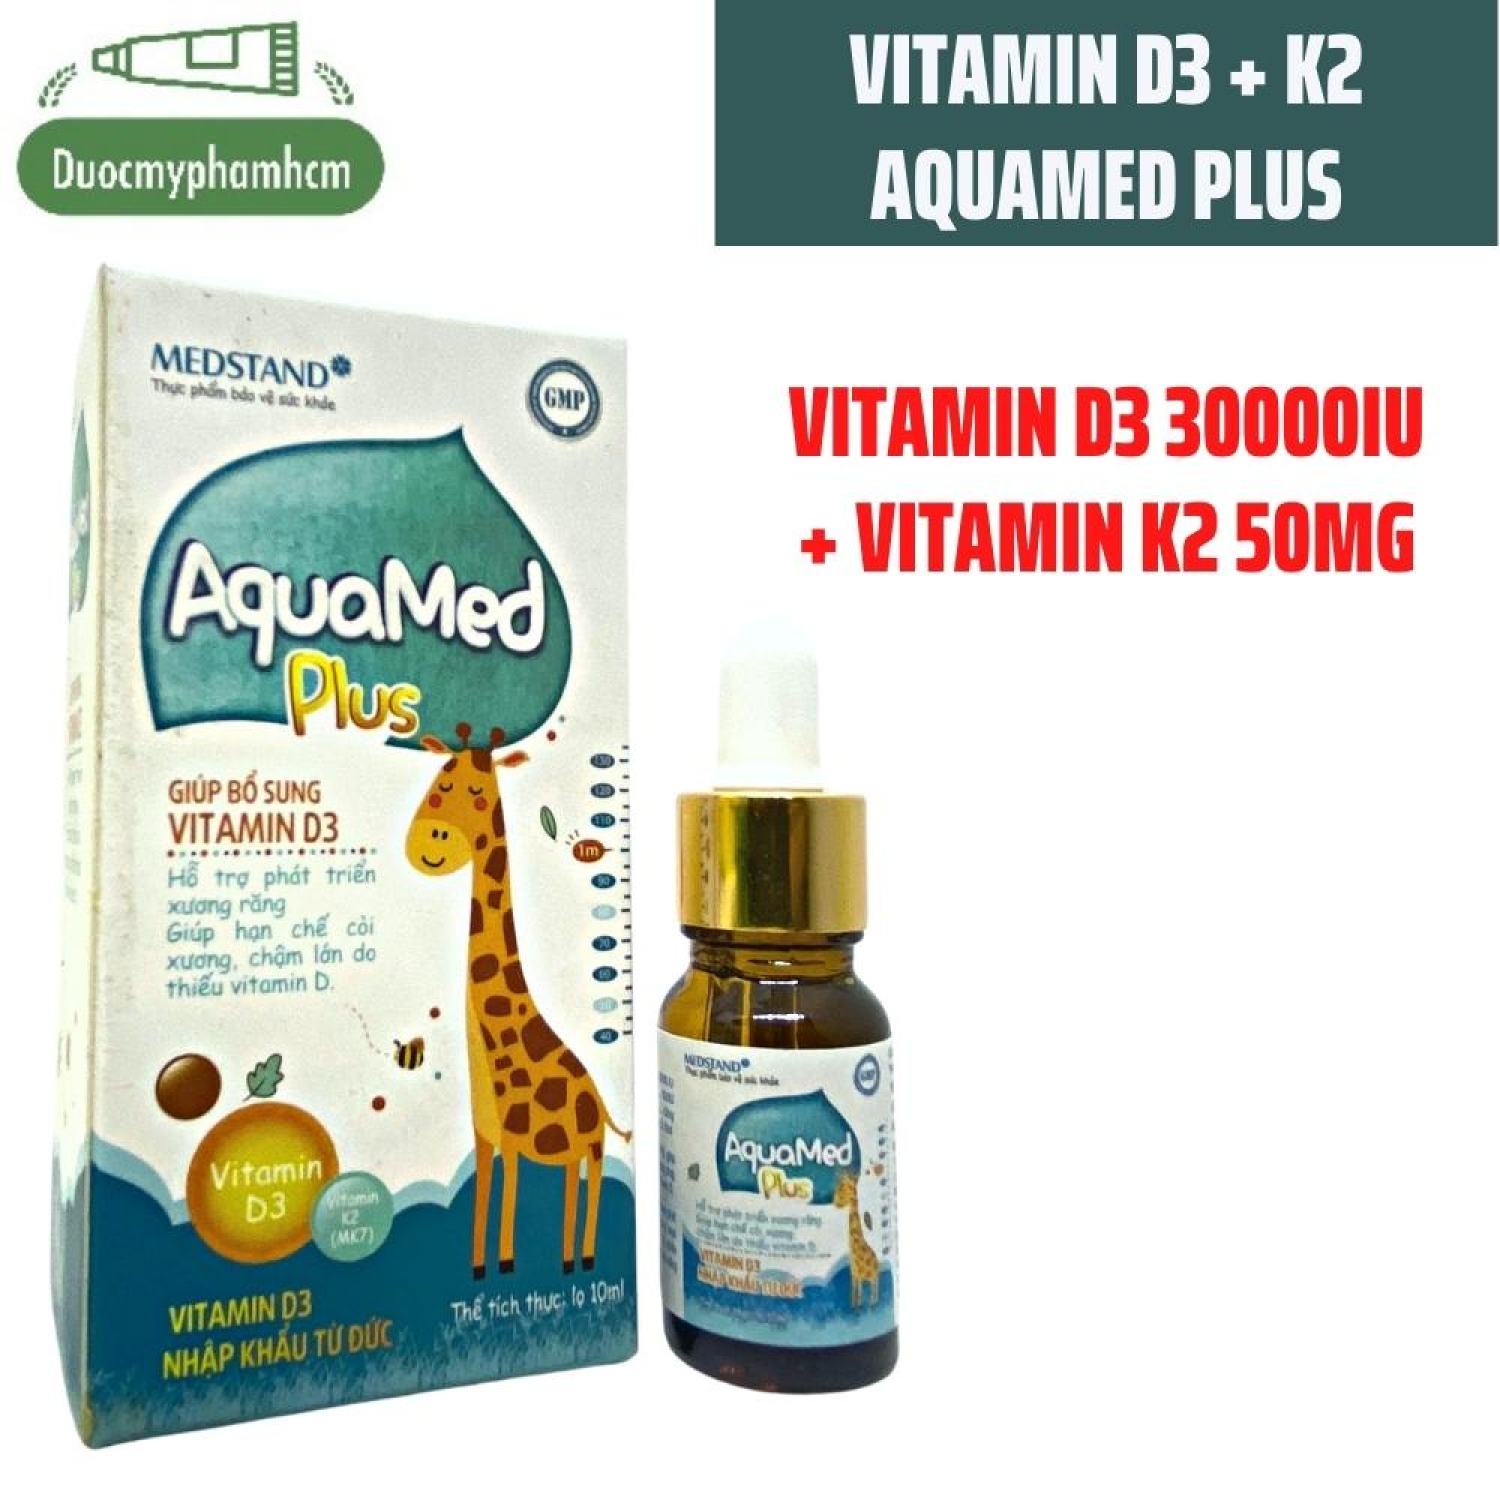 Bổ Sung Vitamin D3 AquaMed Plus cho trẻ - Phát triển xương răng, chiều cao